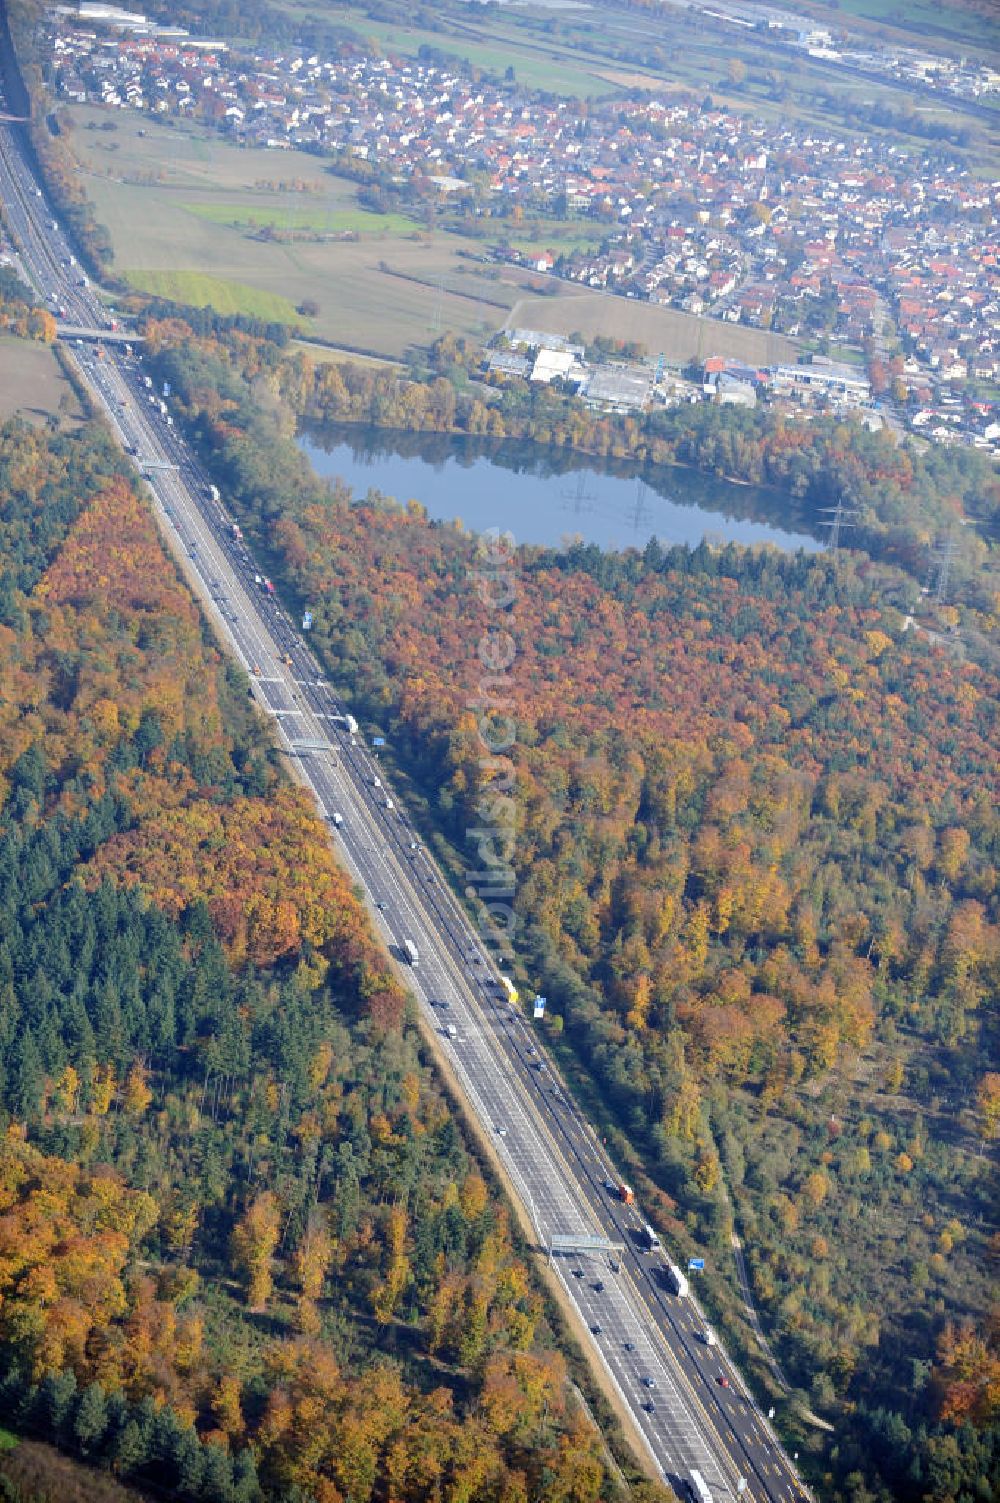 Sinzheim aus der Vogelperspektive: Baustelle Ausbau Autobahn A 5